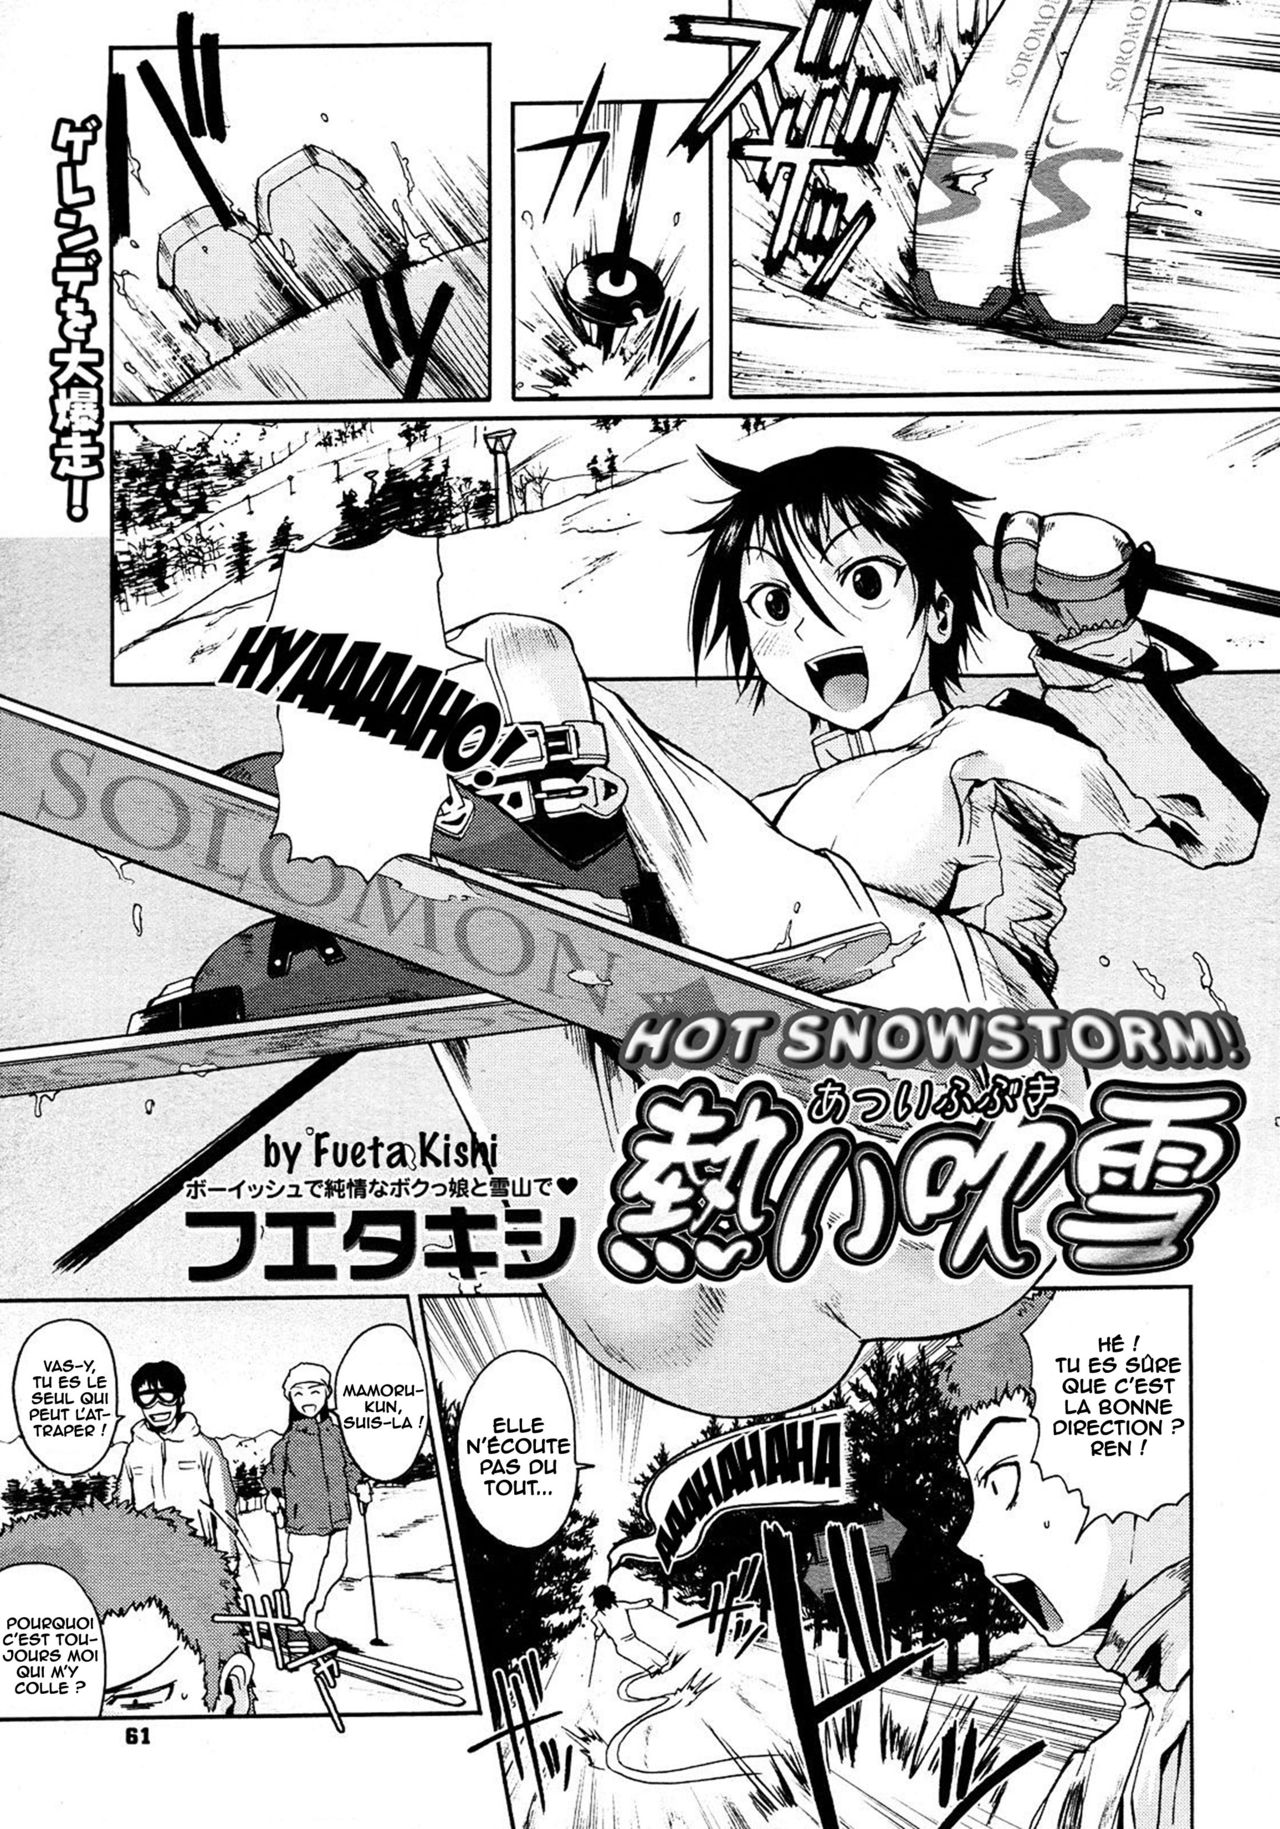 Atsui Fubuki  Hot Snowstorm!